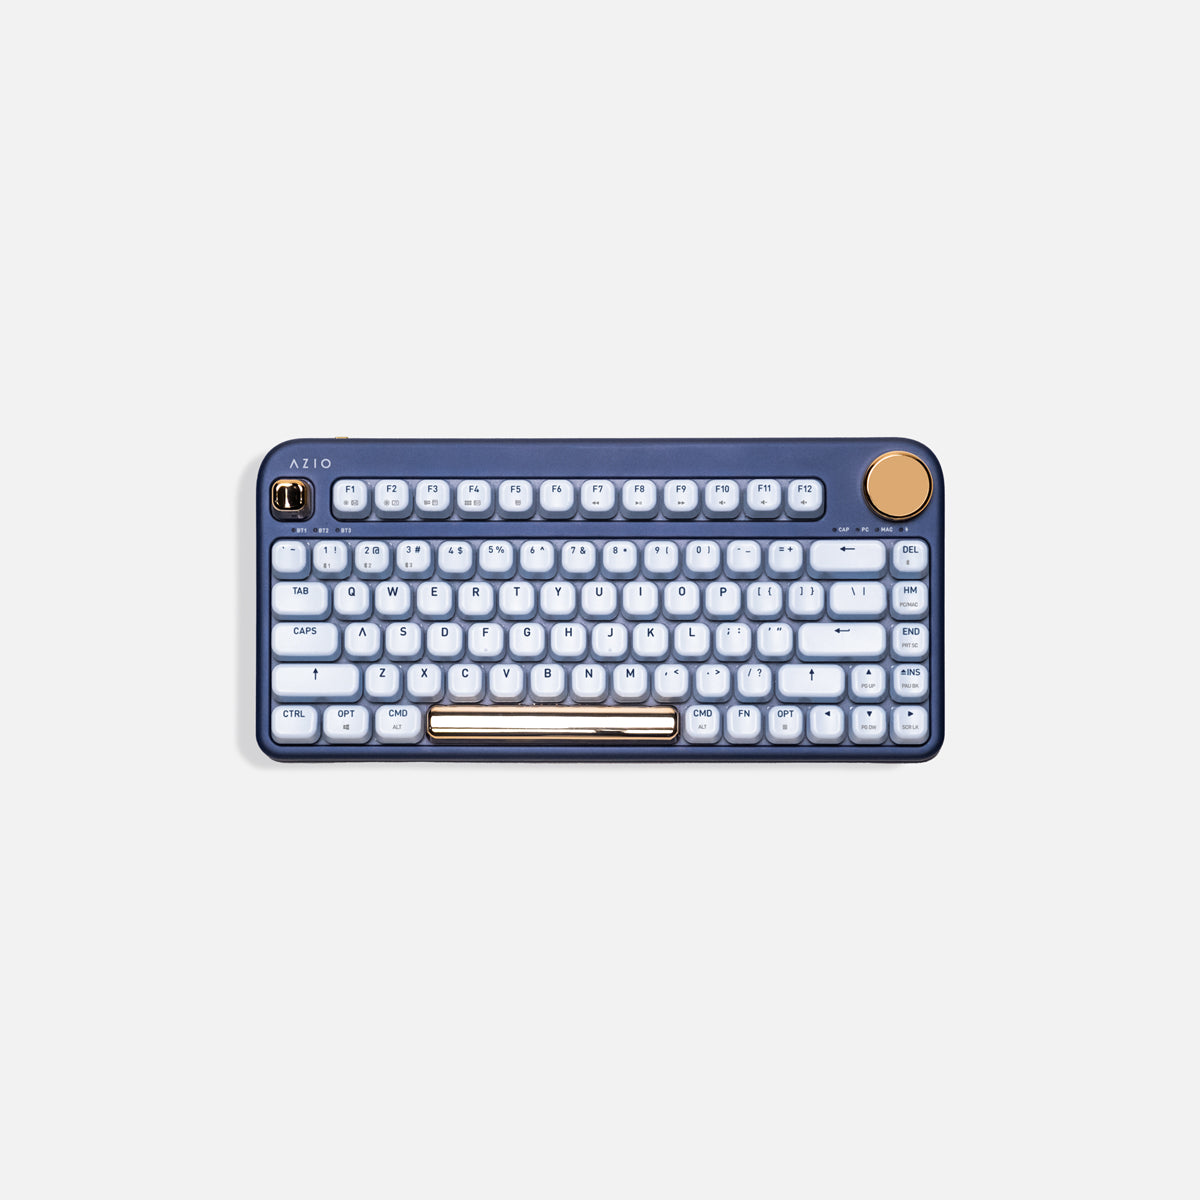 IZO Wireless Keyboard (Blue Switch)